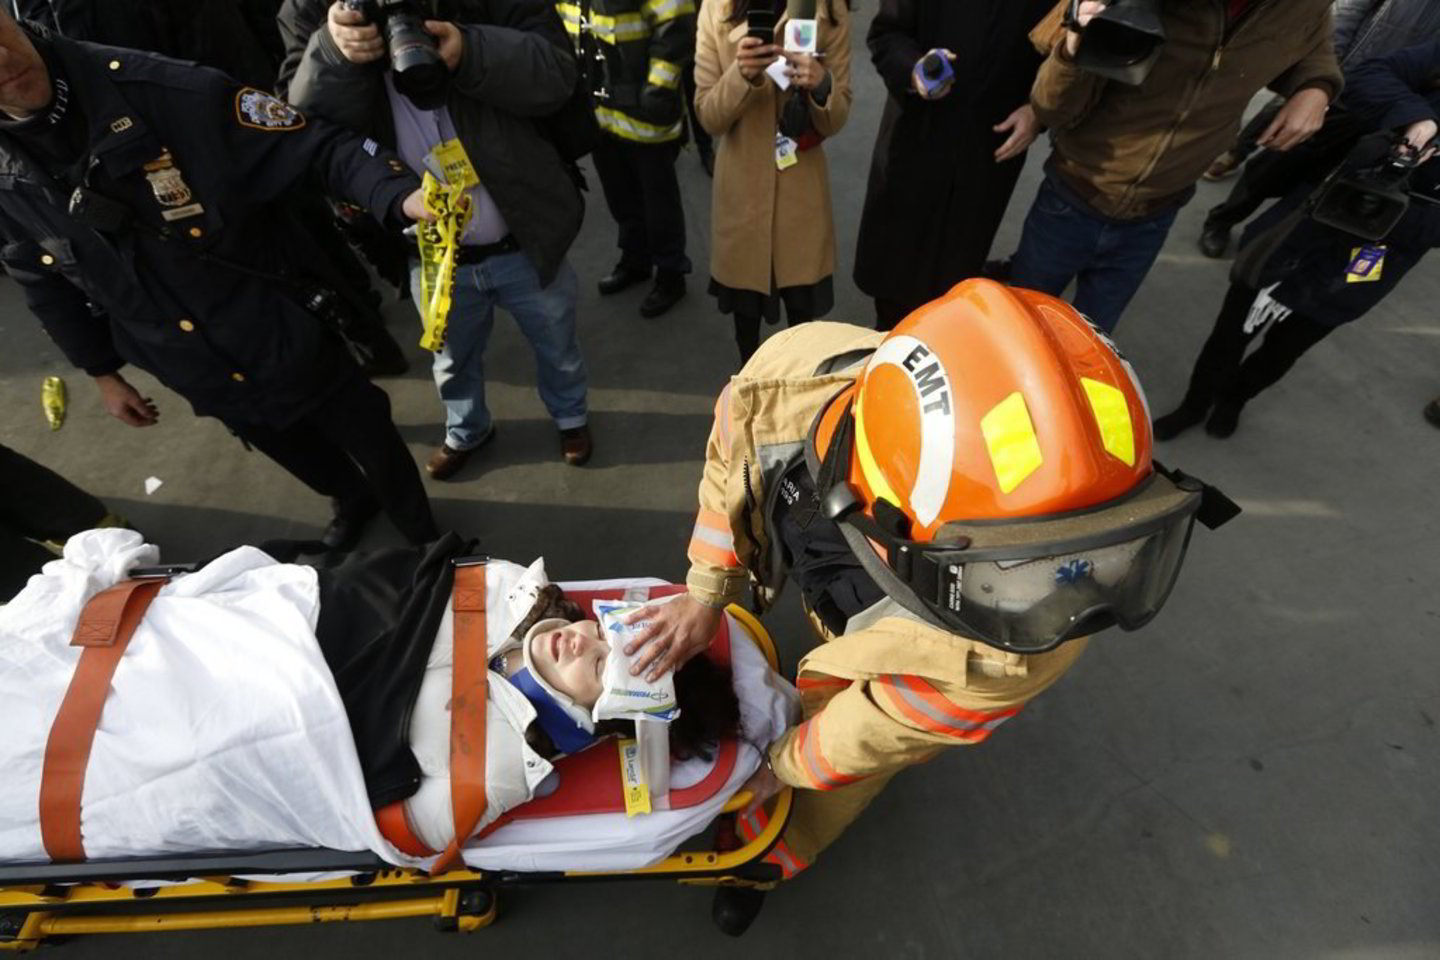 Maždaug 50-60 žmonių patyrė sužeidimus, nuo kritinių iki nesunkių, tačiau apie žuvusius žmones nepranešama.<br>„Reuters” asociatyvi nuotrauka